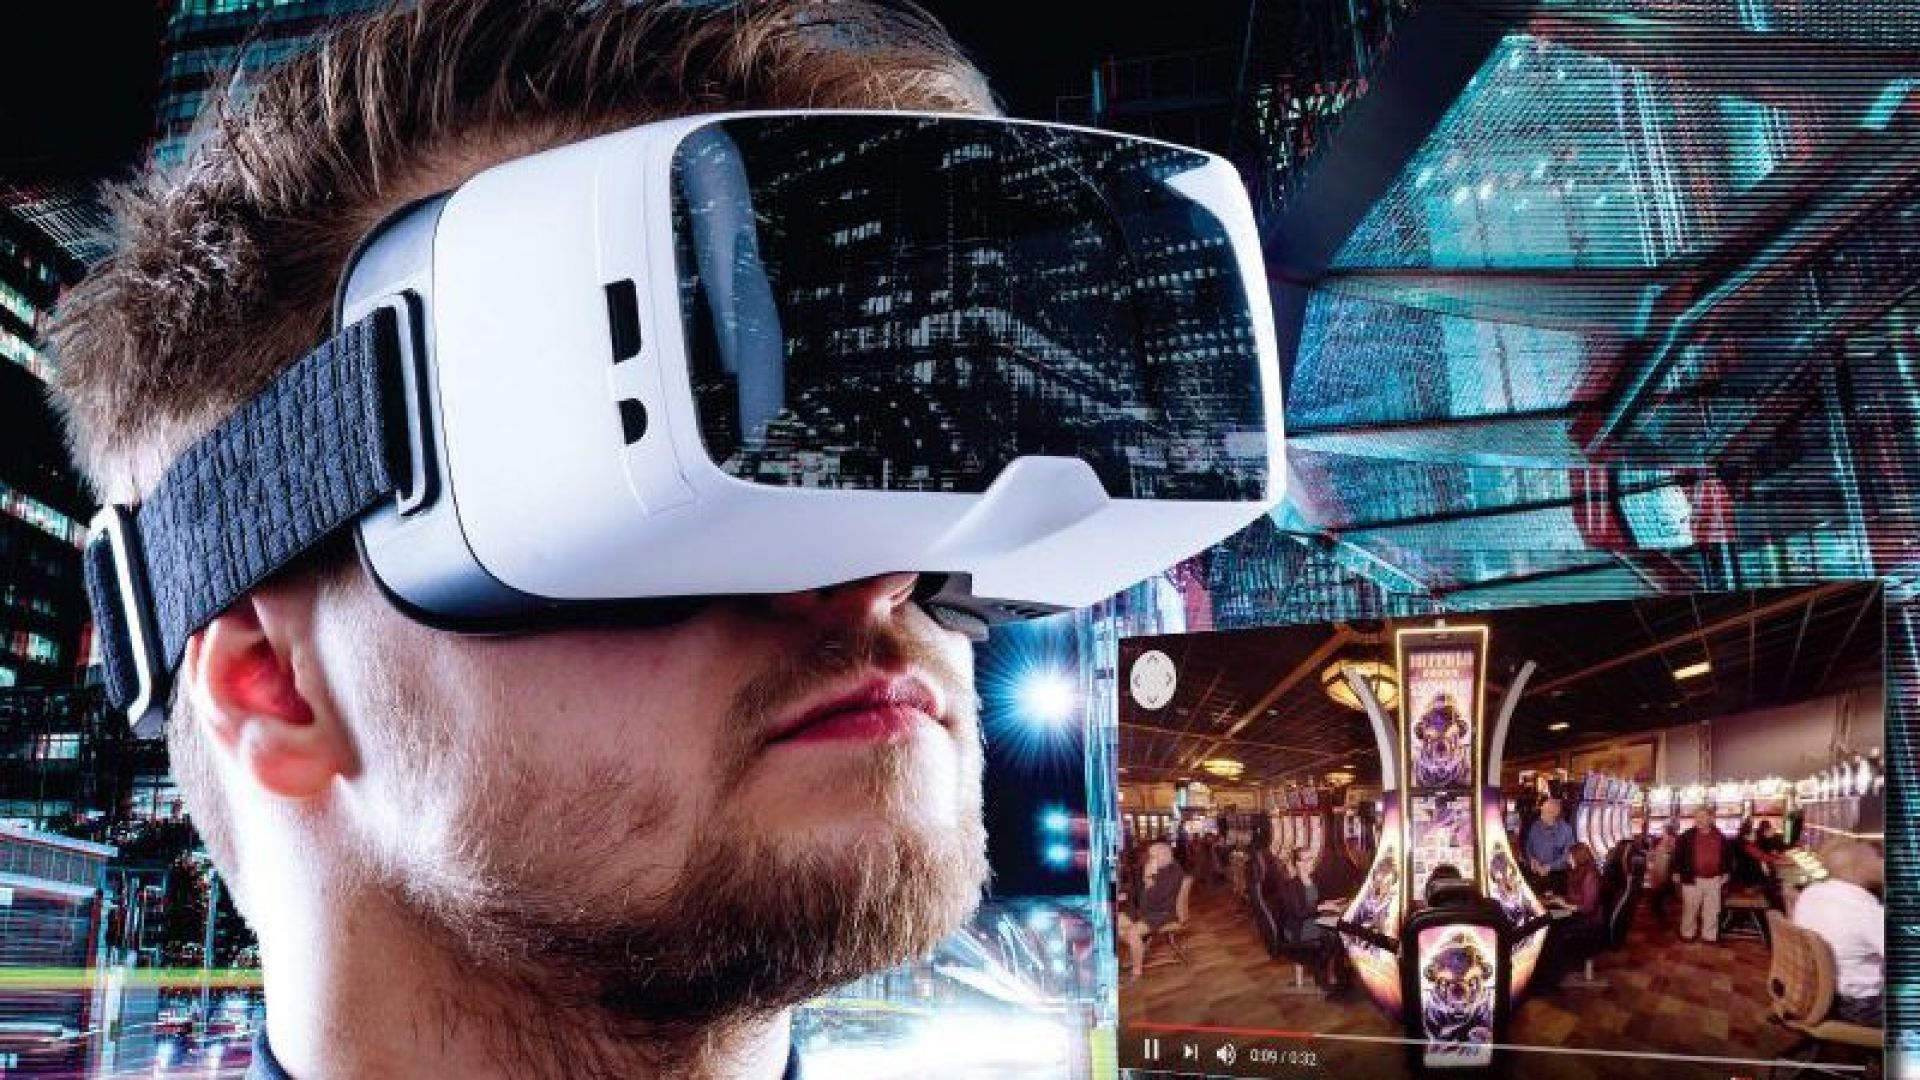 Compilations vr. Очки виртуальной реальности. Виртуальный мир. Первый шлем виртуальной реальности. Виртуальная реальность (Virtual reality, VR).